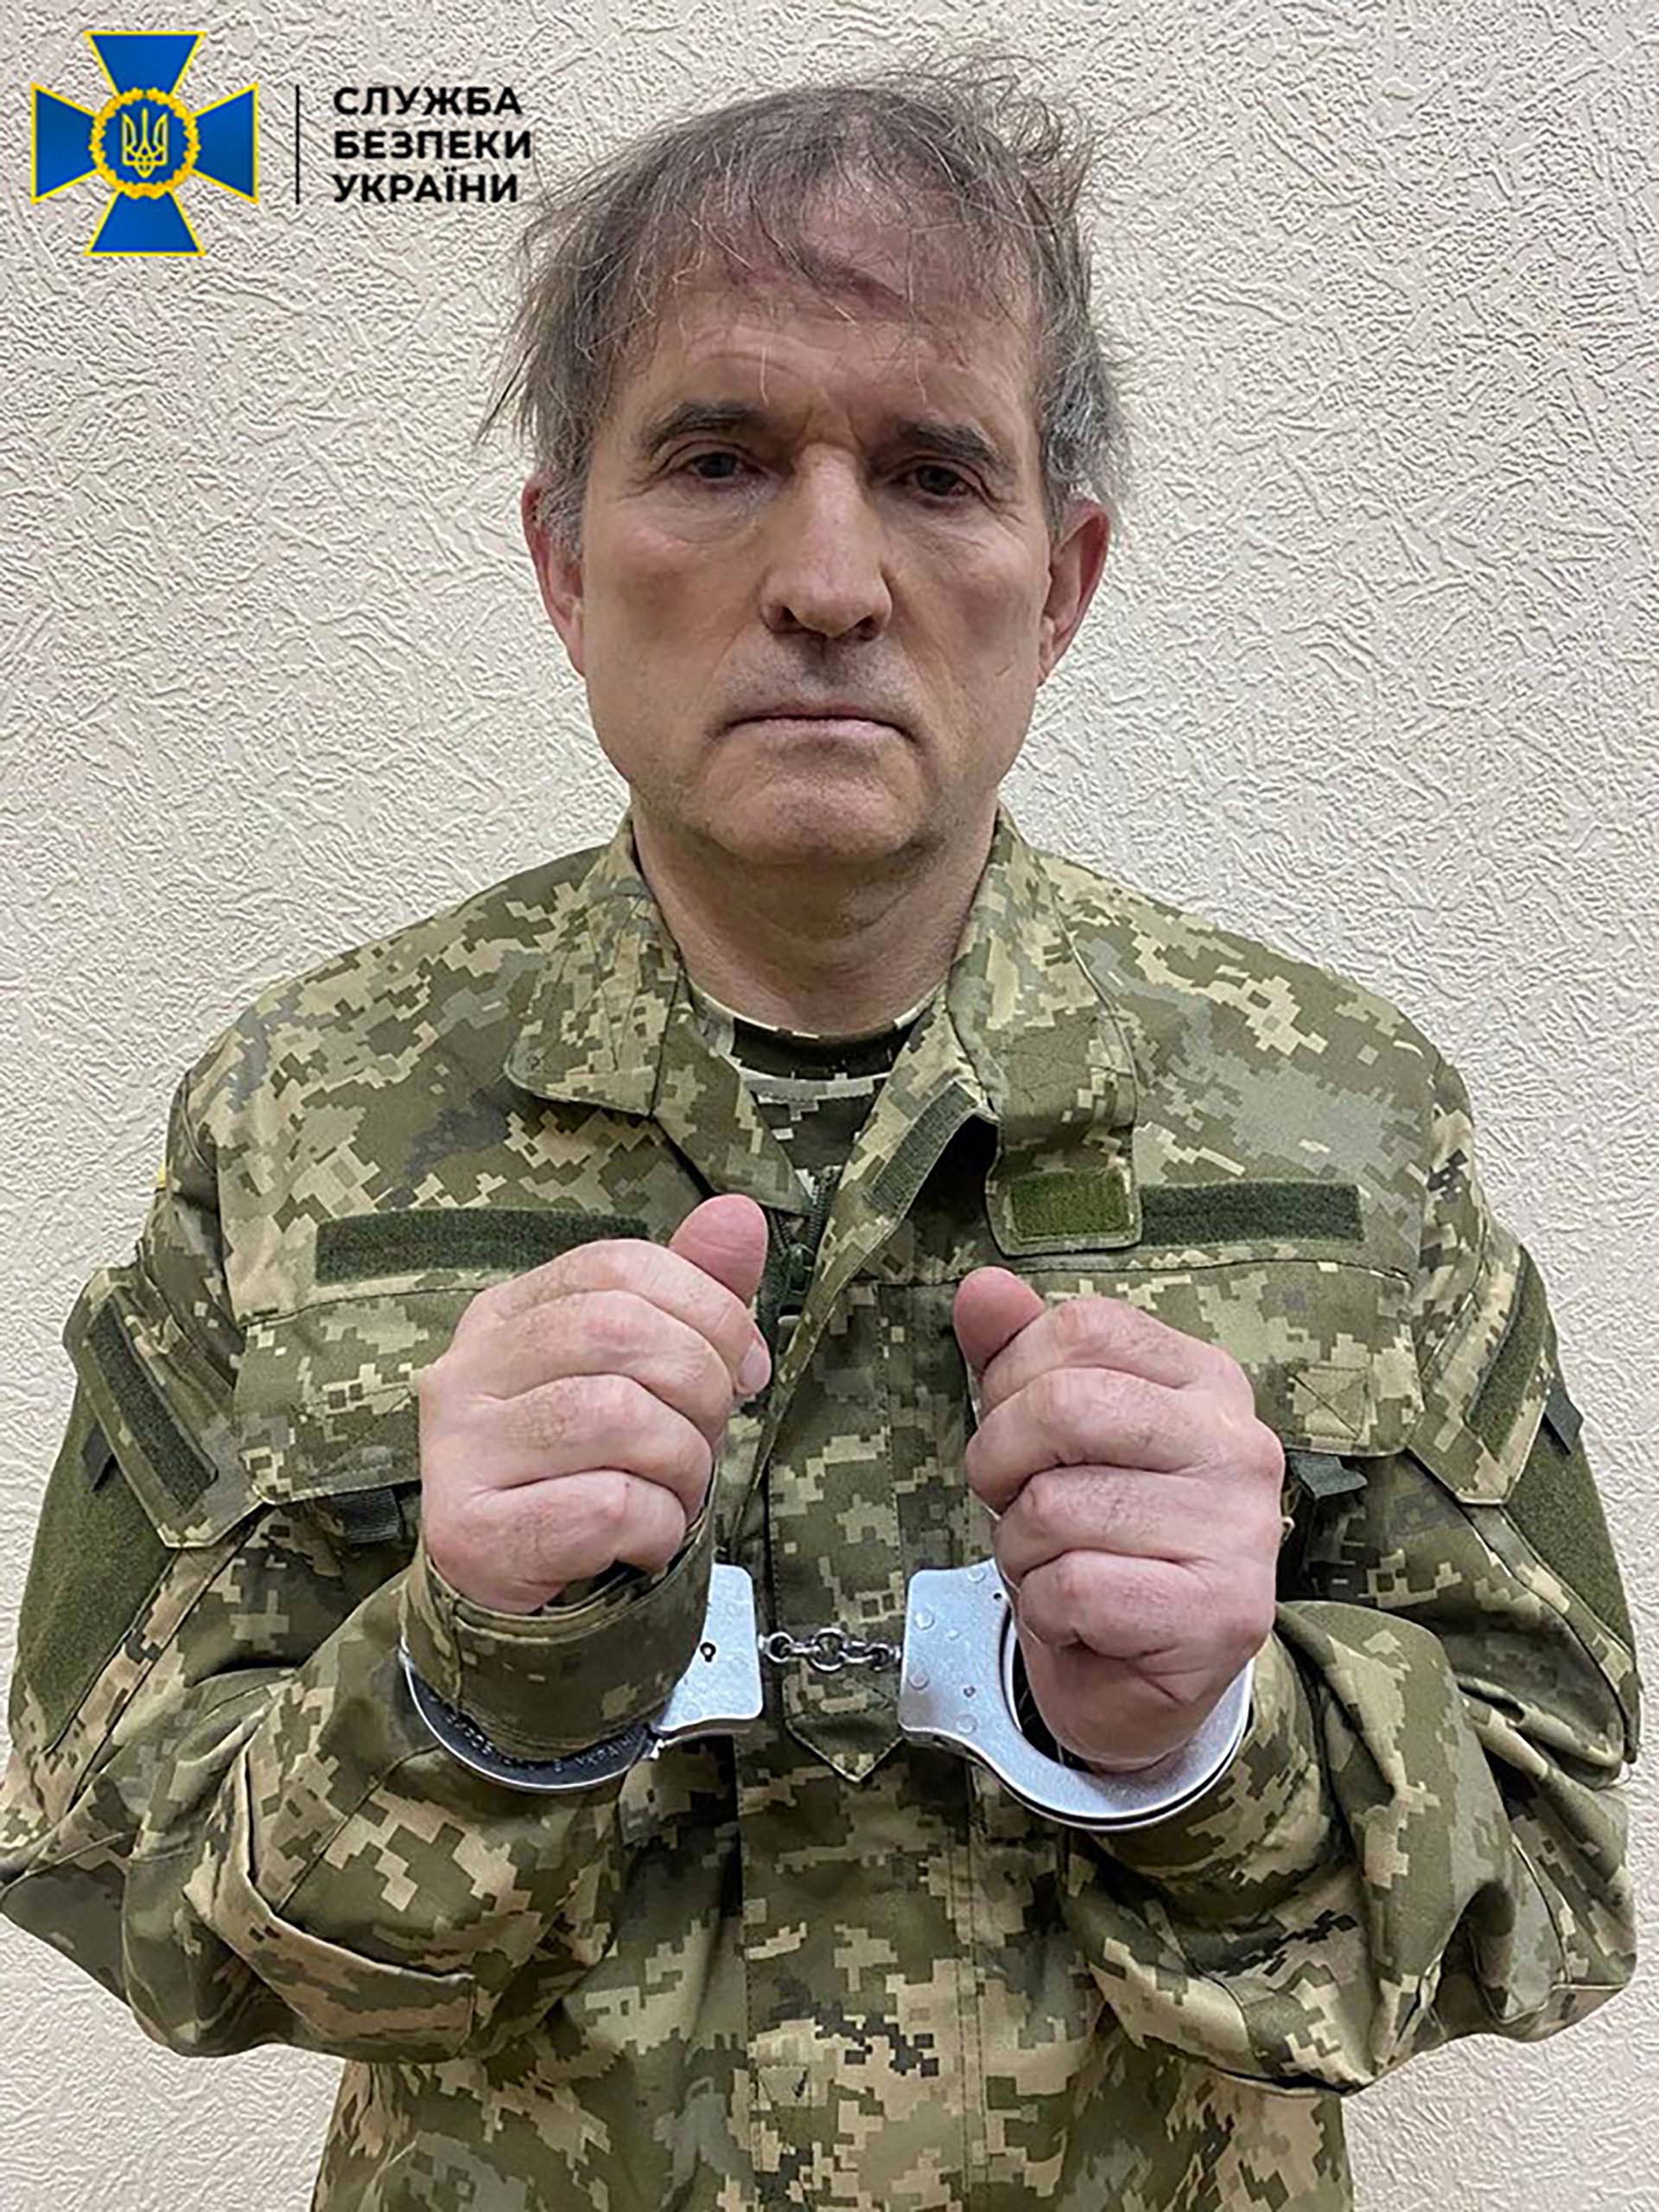 El político ucraniano prorruso Viktor Medvedchuk es retratado después de su detención por las fuerzas de seguridad (Servicio de prensa del Servicio de Seguridad del Estado de Ucrania/Folleto vía REUTERS)